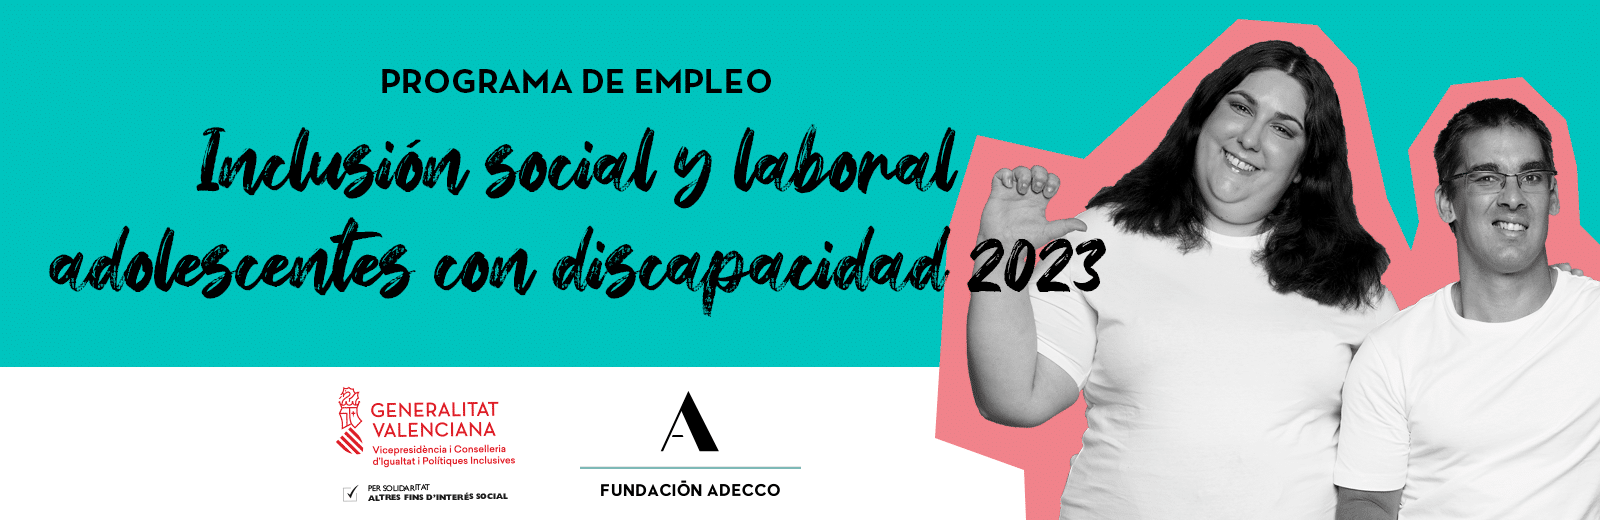 Programa de empleo dirigido a adolescentes con discapacidad. Fundación Adecco y Generalitat Valenciana.